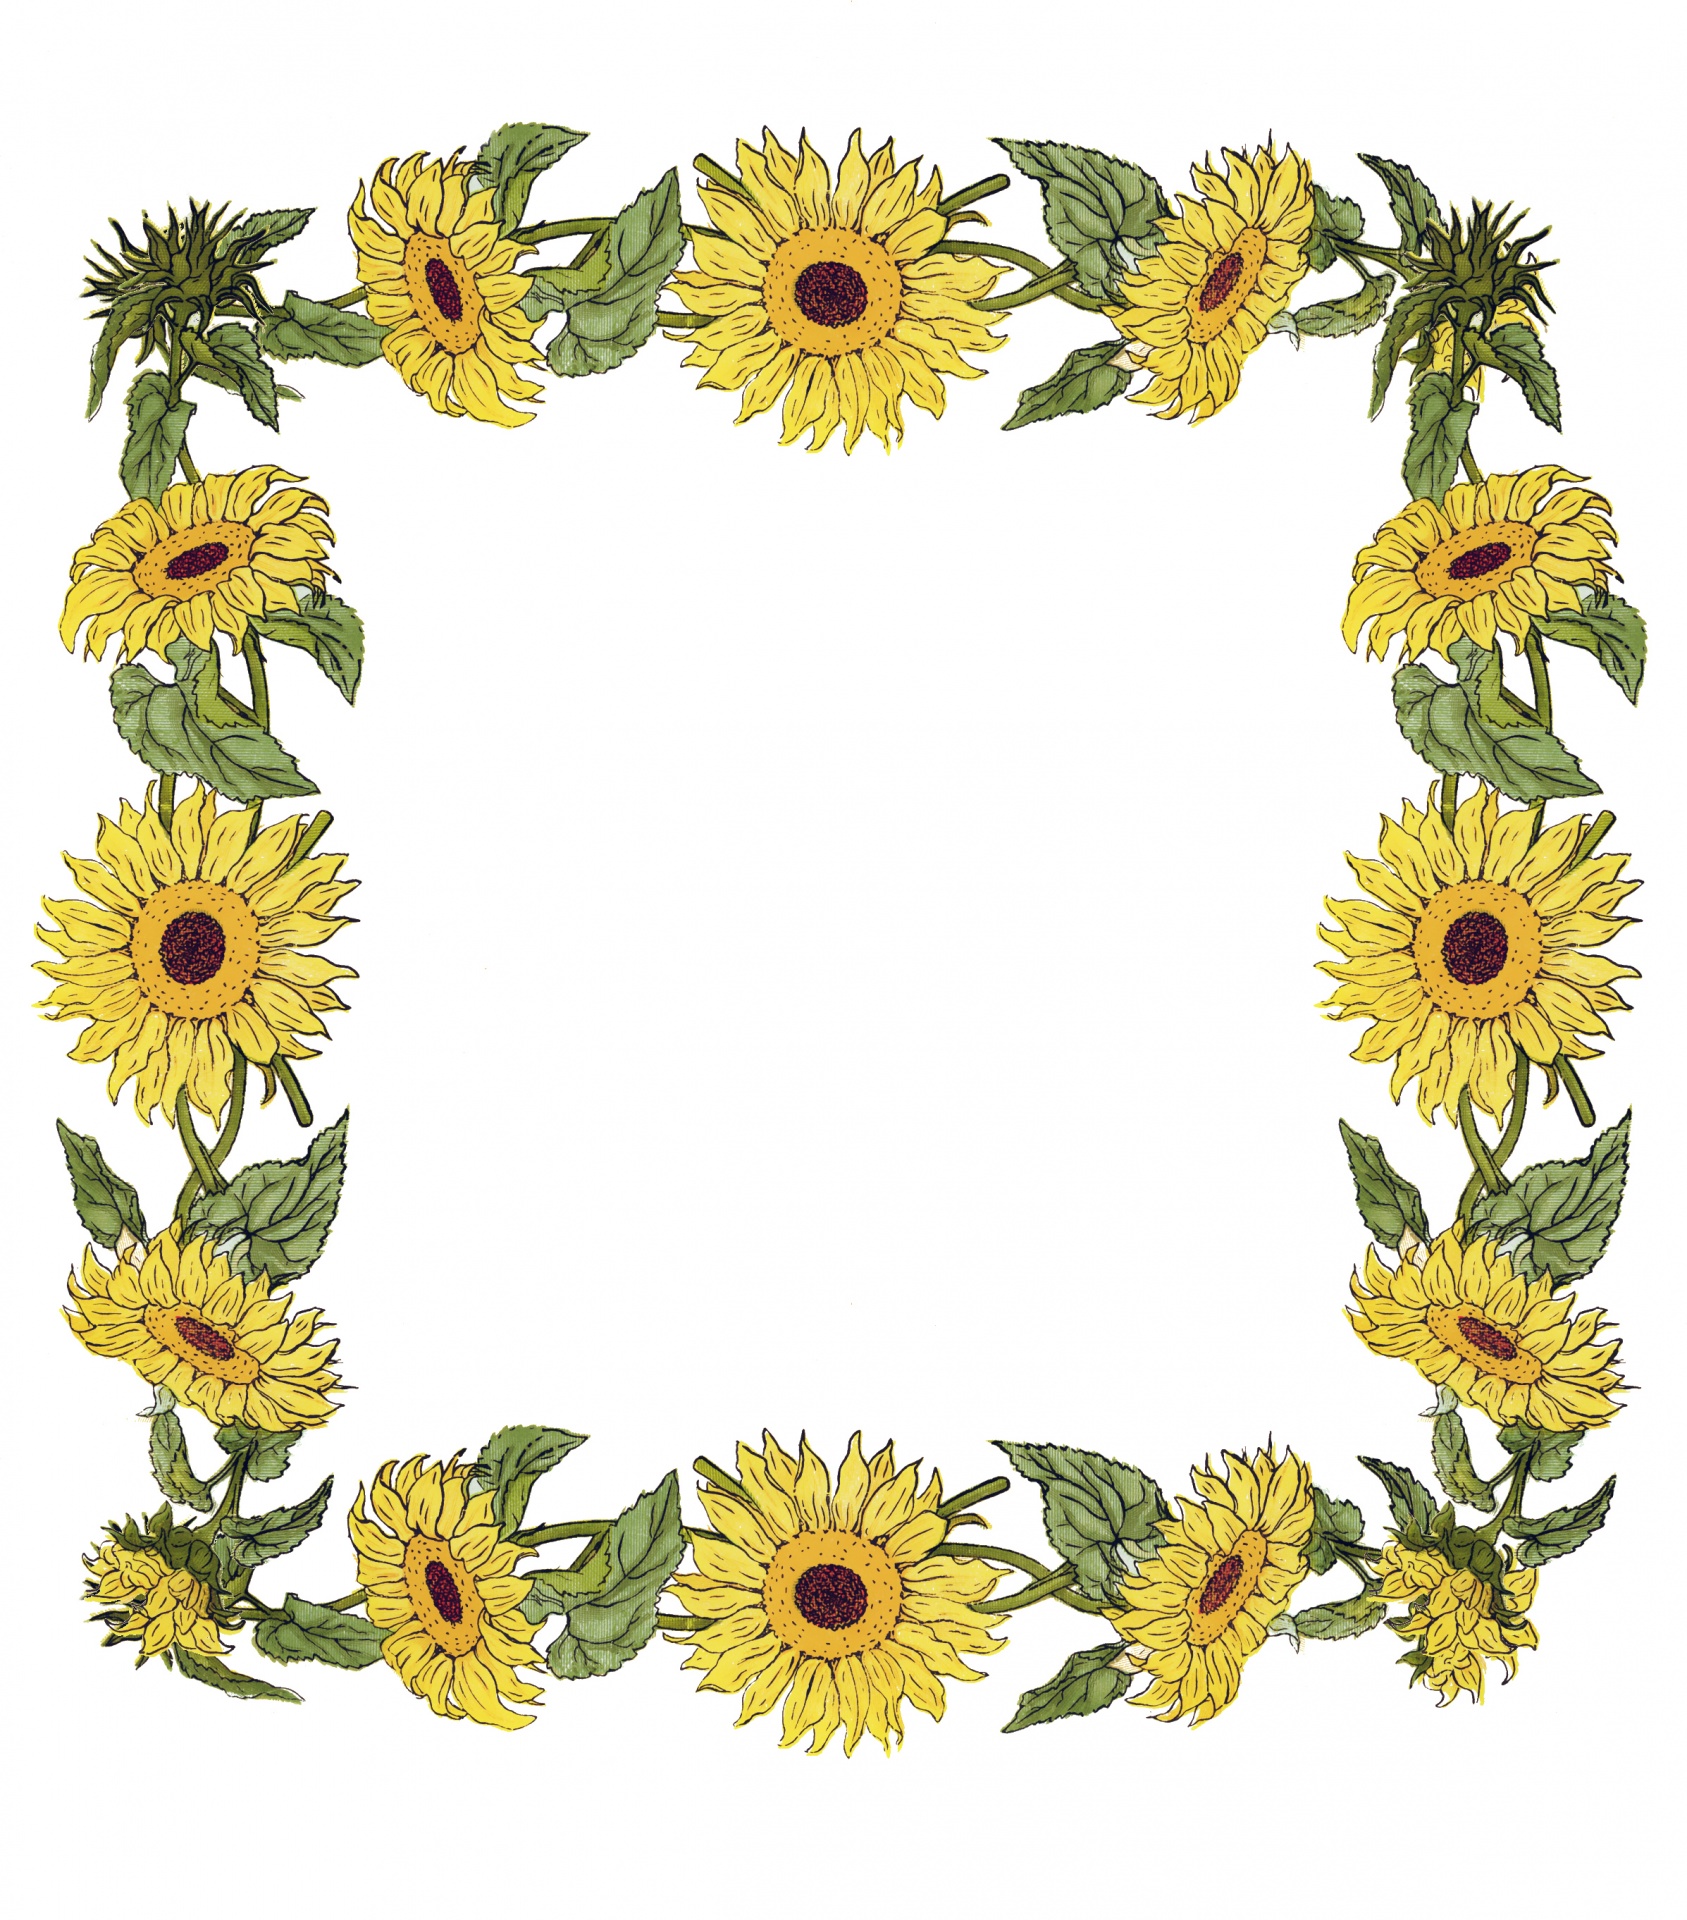 sunflower,sunflowers,frame,vintage,art,illustration,white,background,flower,...